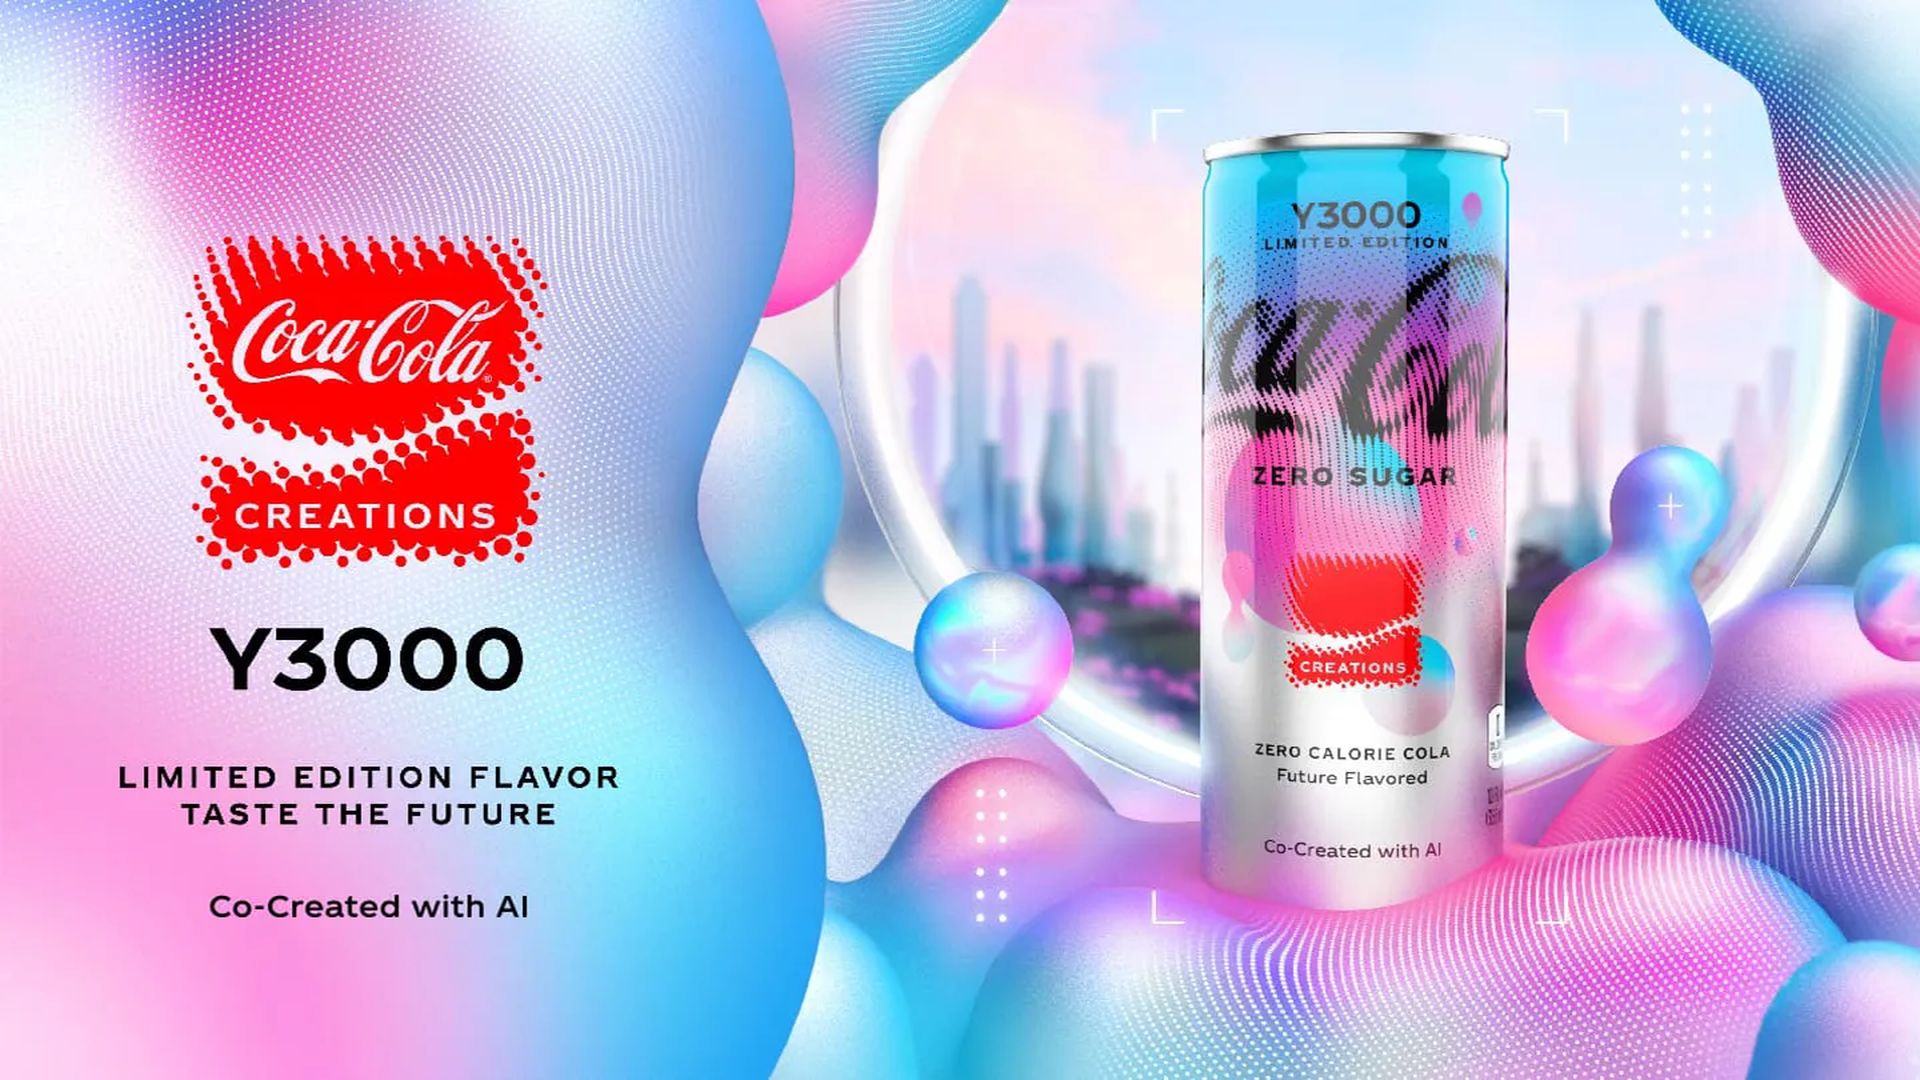 Coca Cola Creations presents Y3000